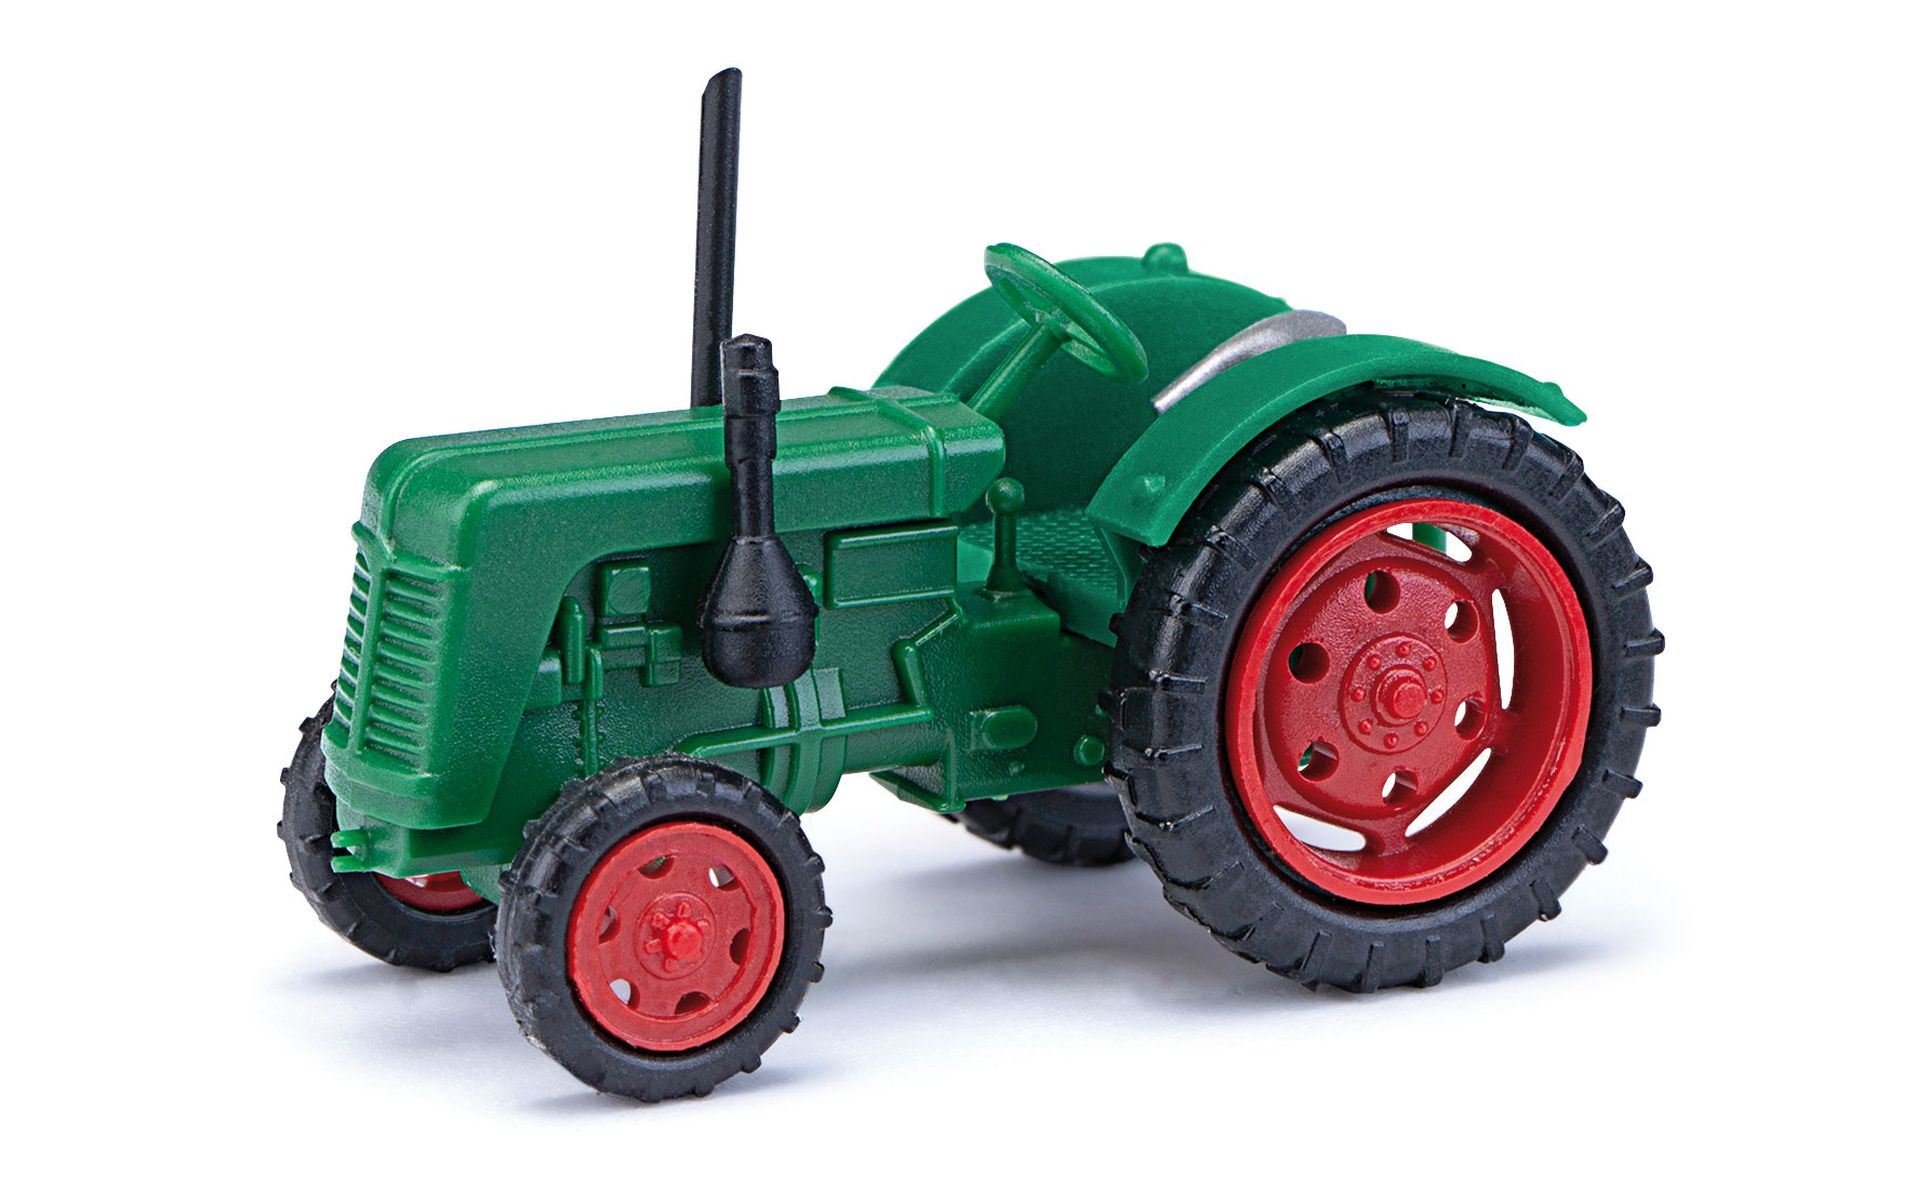 Busch 211006710 - Traktor Famulus, grün